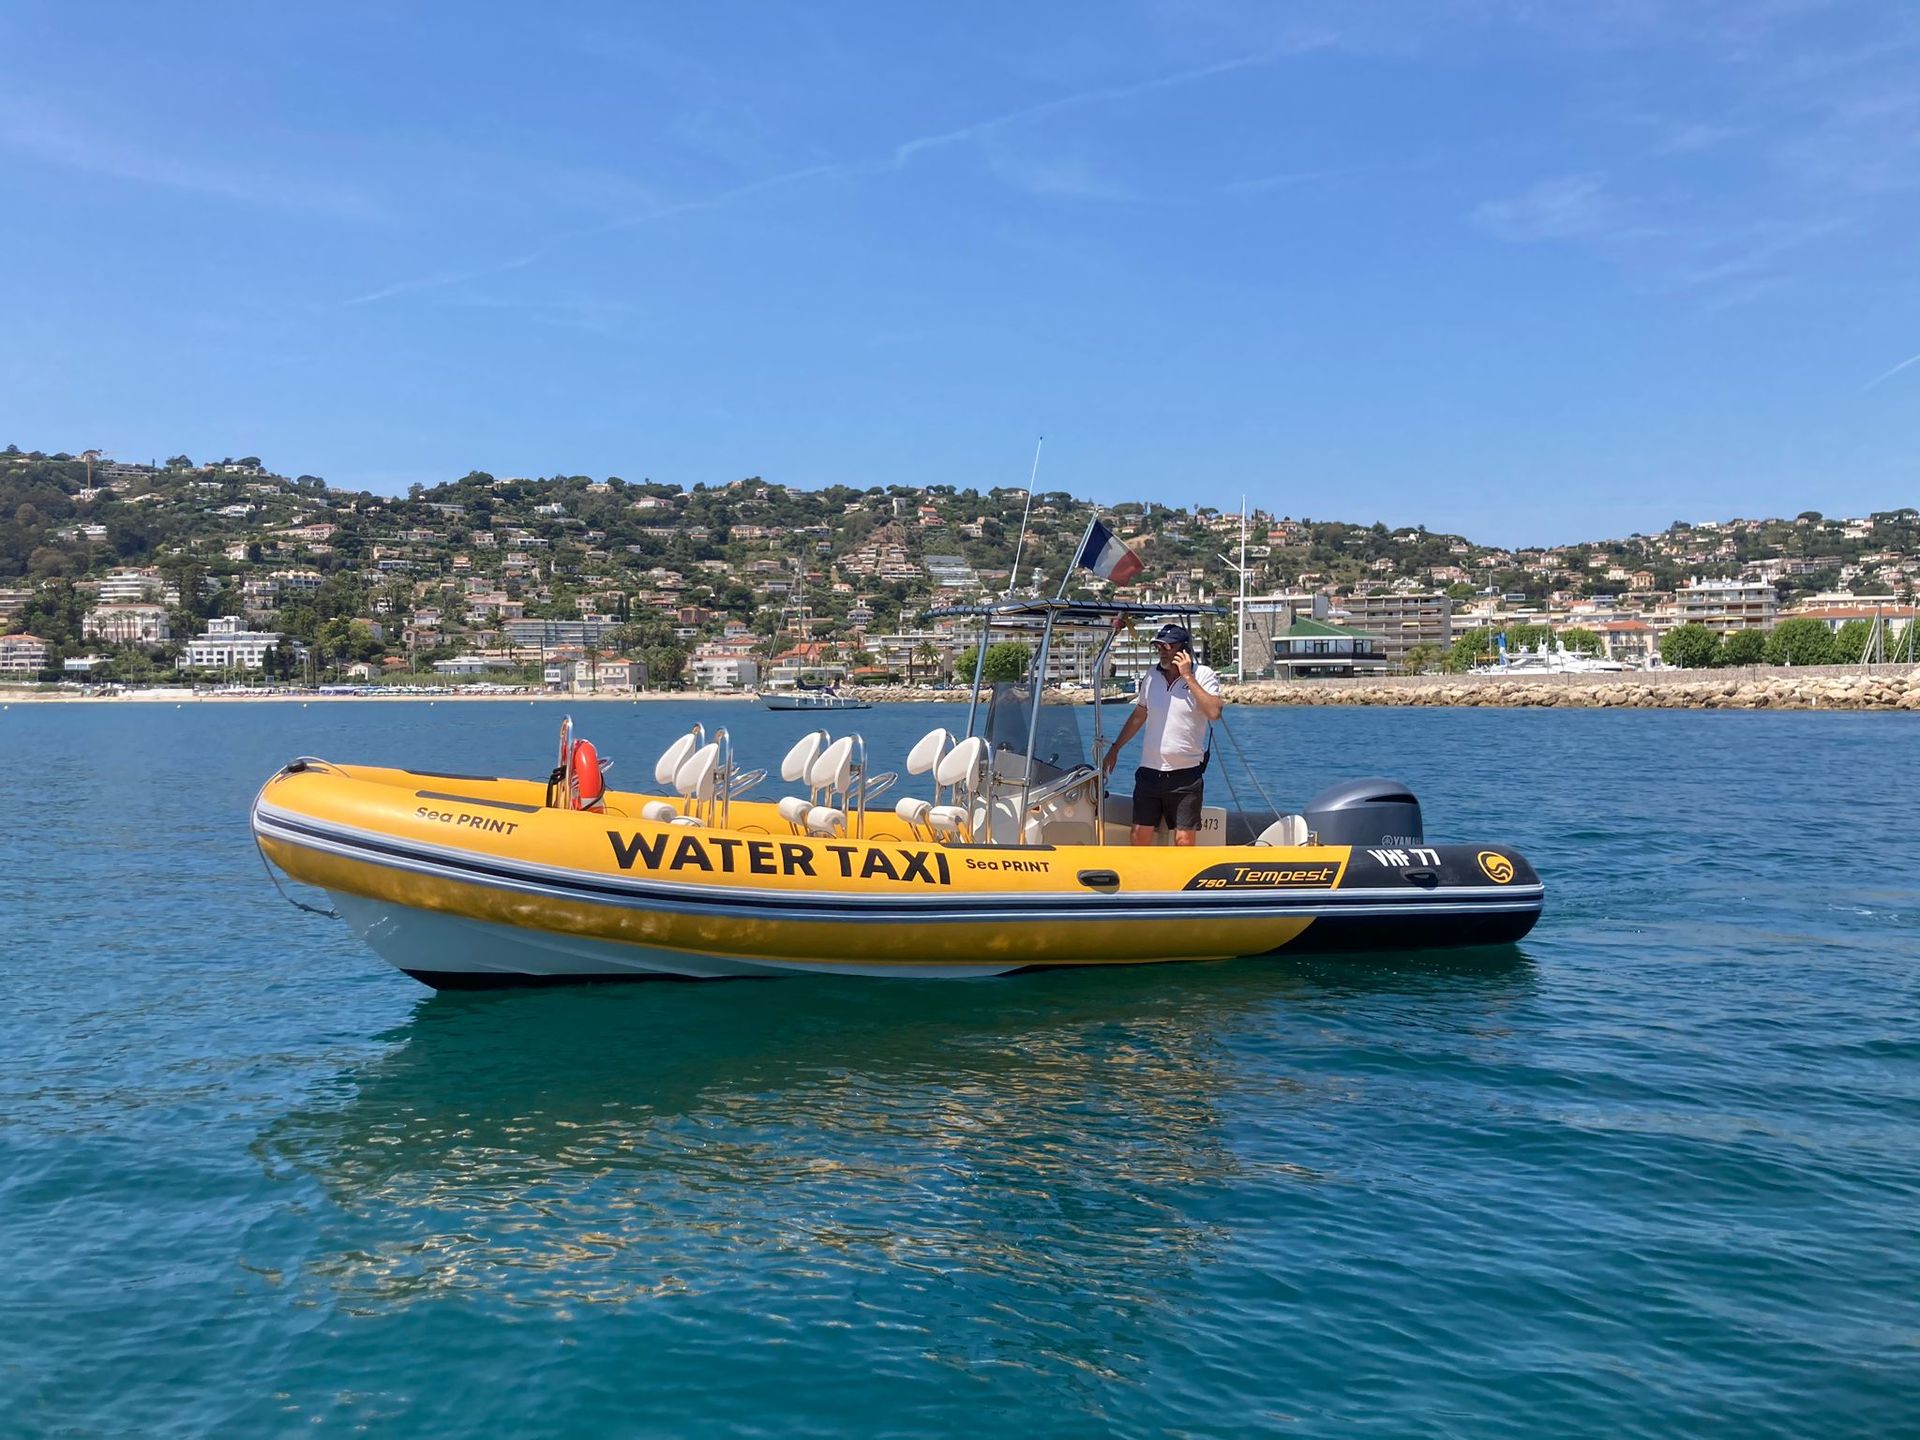 seaprint water taxi juan les pins golfe juan cannes mandelieu théoule îles de lérins taxi boat bateau taxi